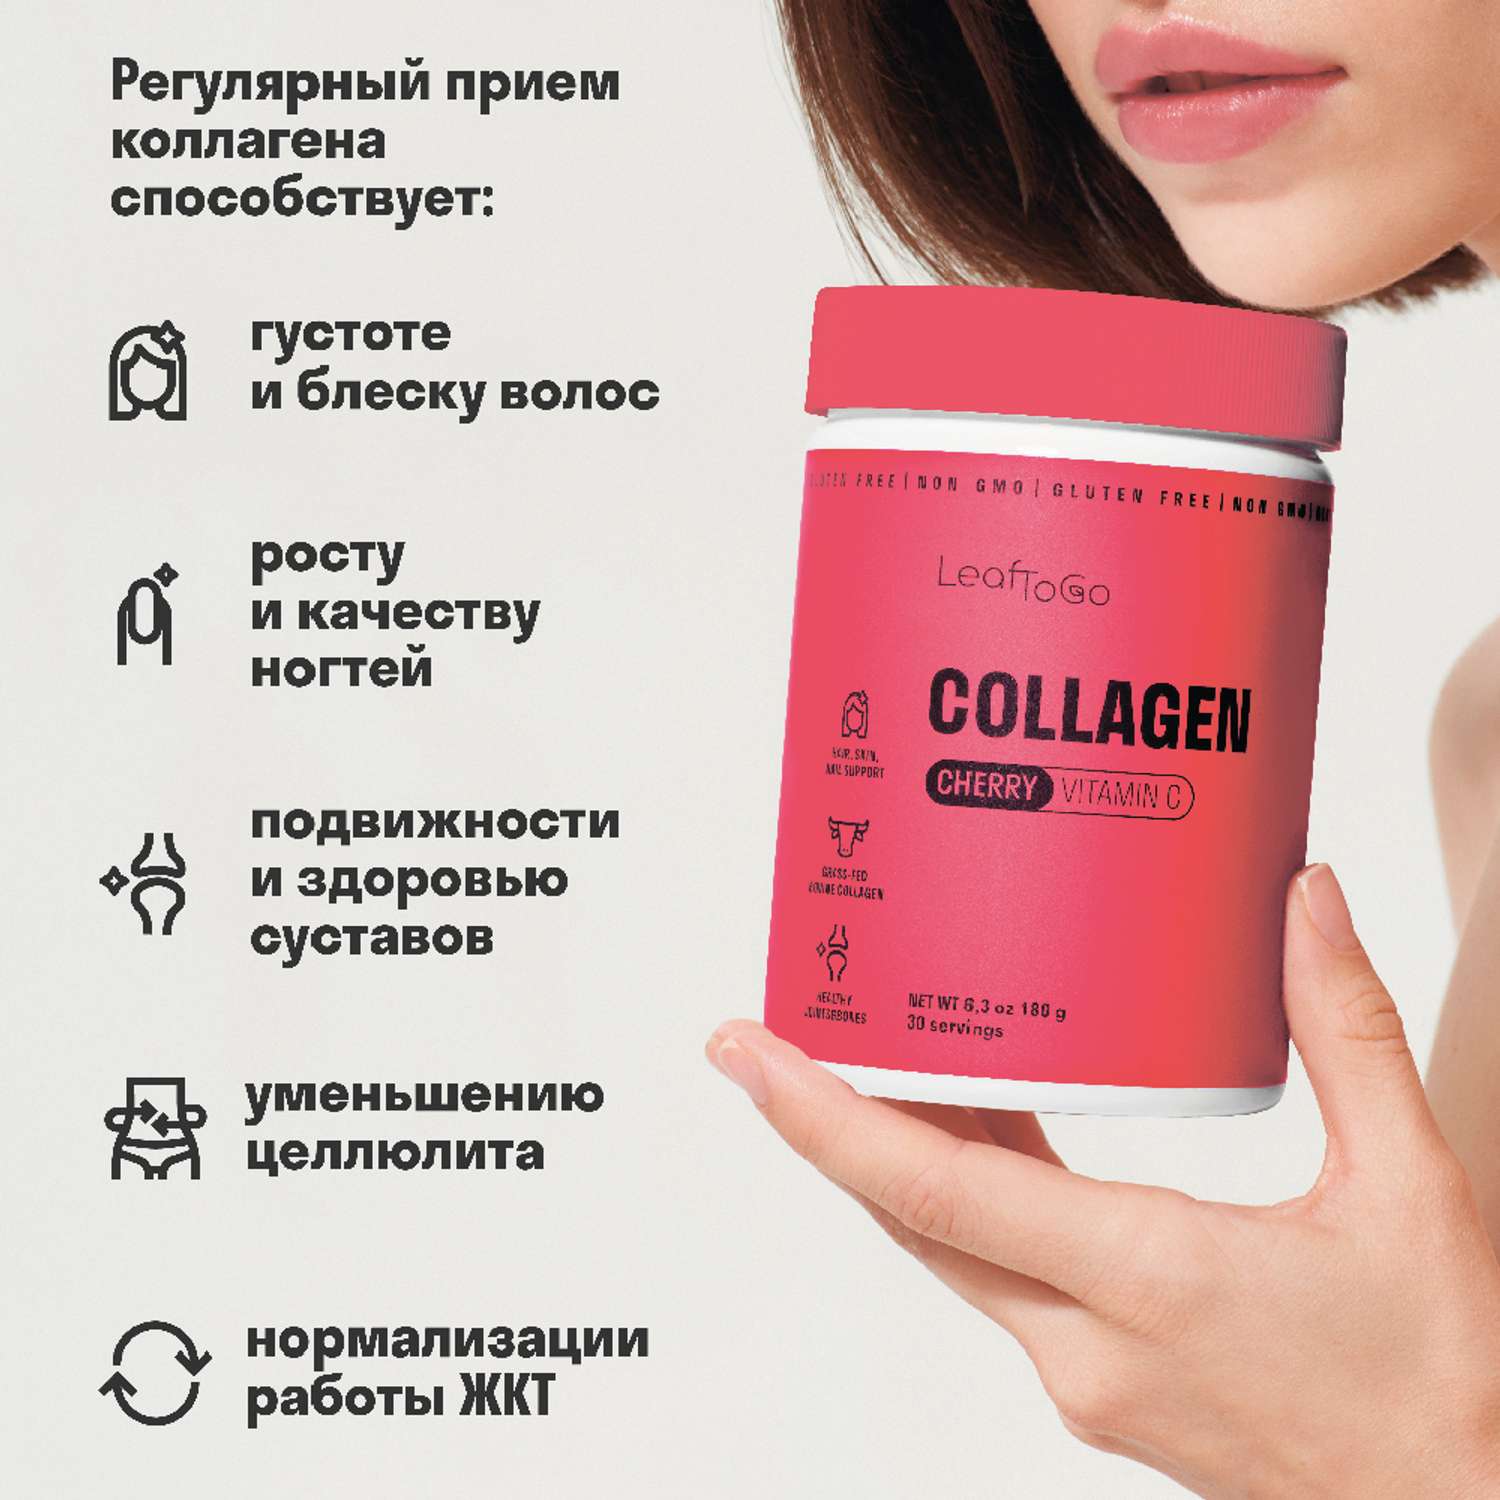 Collagen vitamin c отзывы. Коллаген leaftogo. Leaftogo коллаген с витамином c. Коллаген для волос витамины. Коллаген leaftogo порошковый.